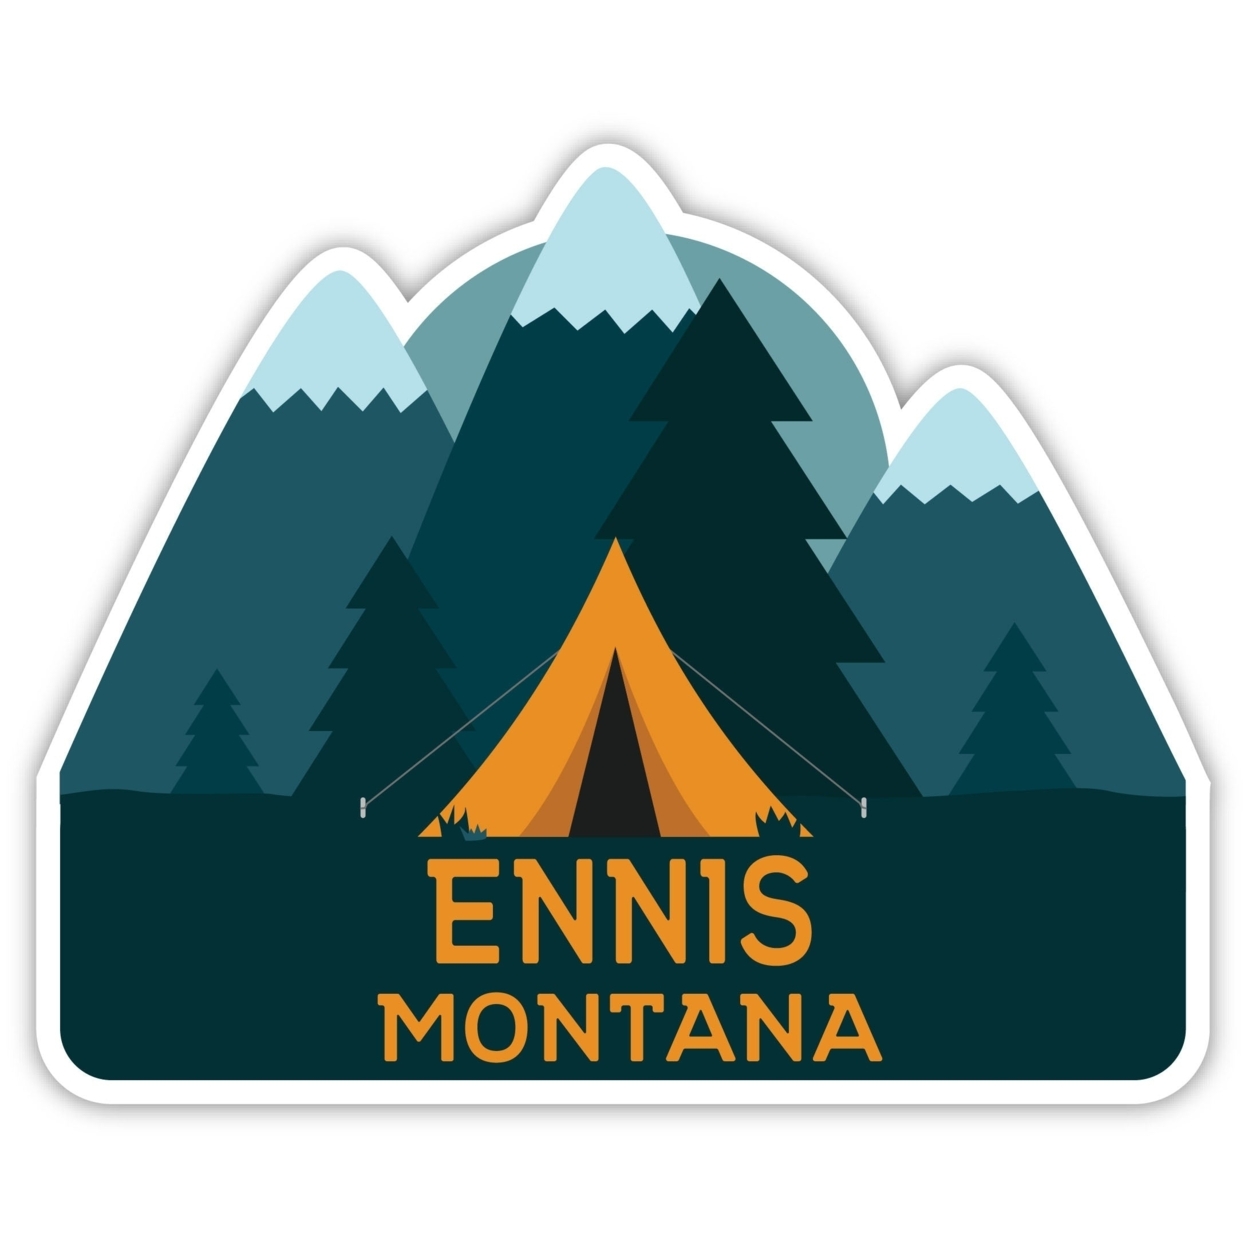 Ennis Montana Souvenir Decorative Stickers (Choose Theme And Size) - Single Unit, 4-Inch, Tent